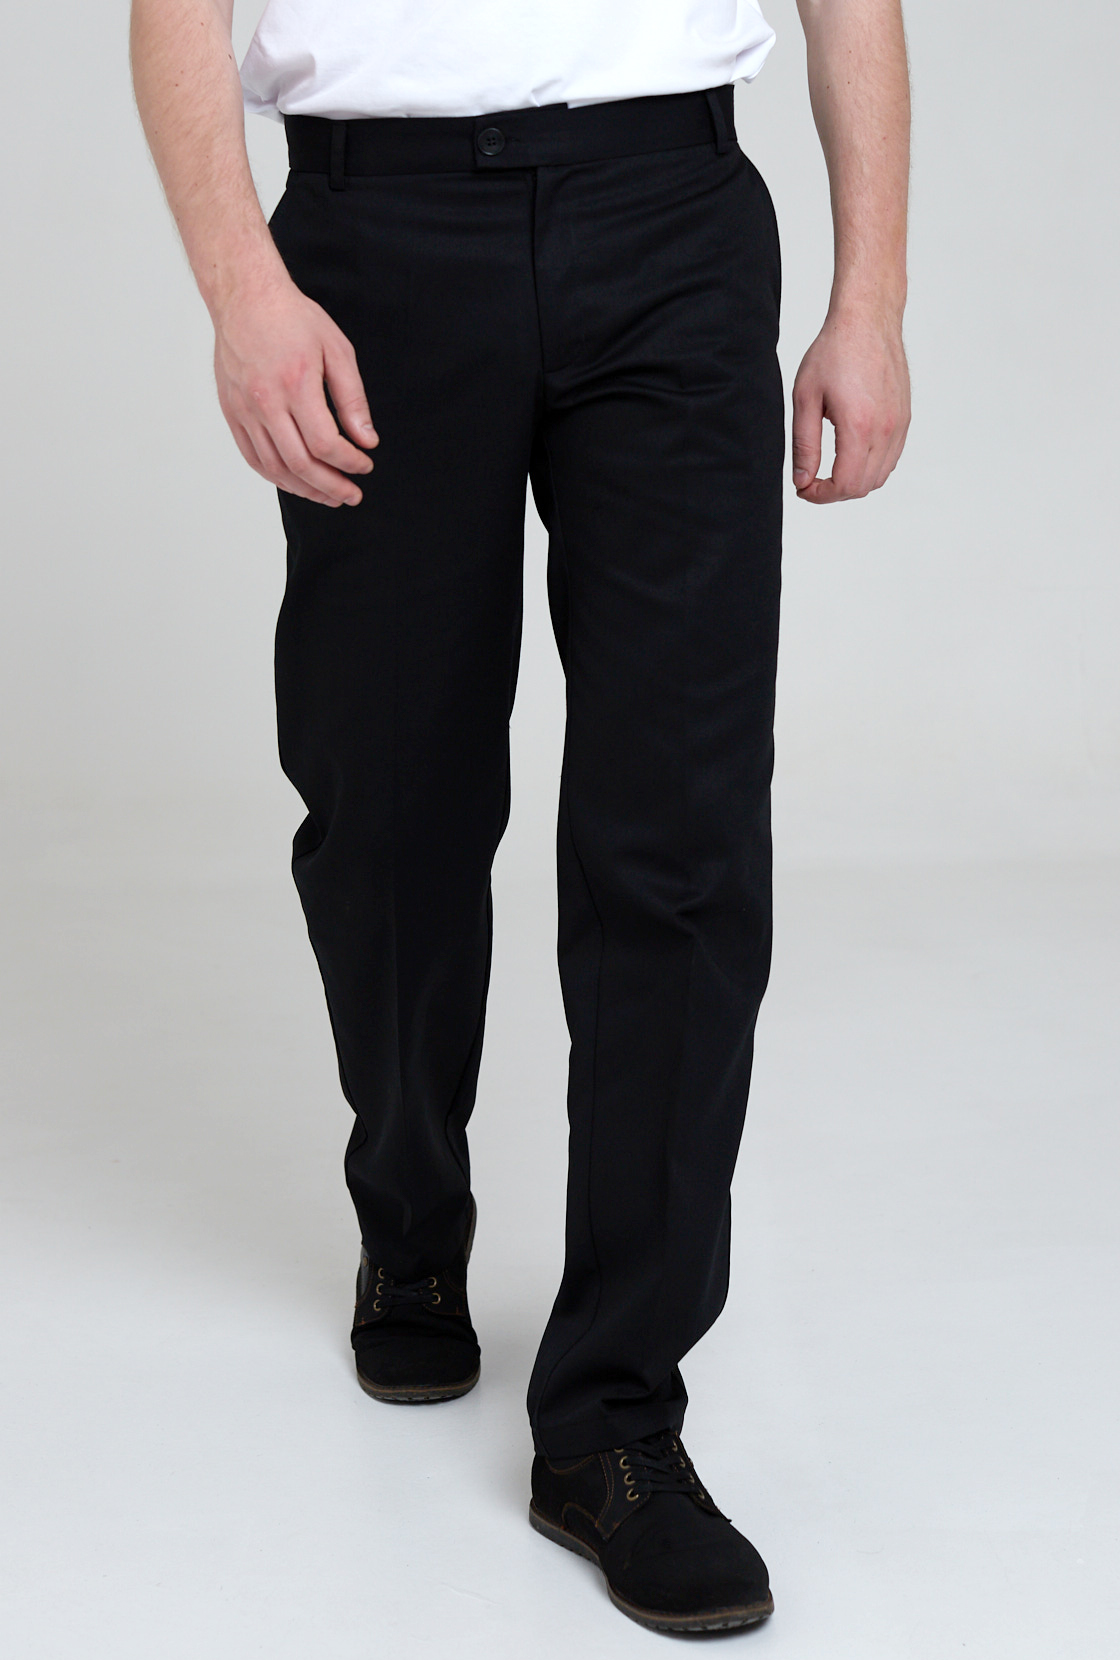 Брюки рабочие мужские IRINA EGOROVA classic trousers черные 46 RU